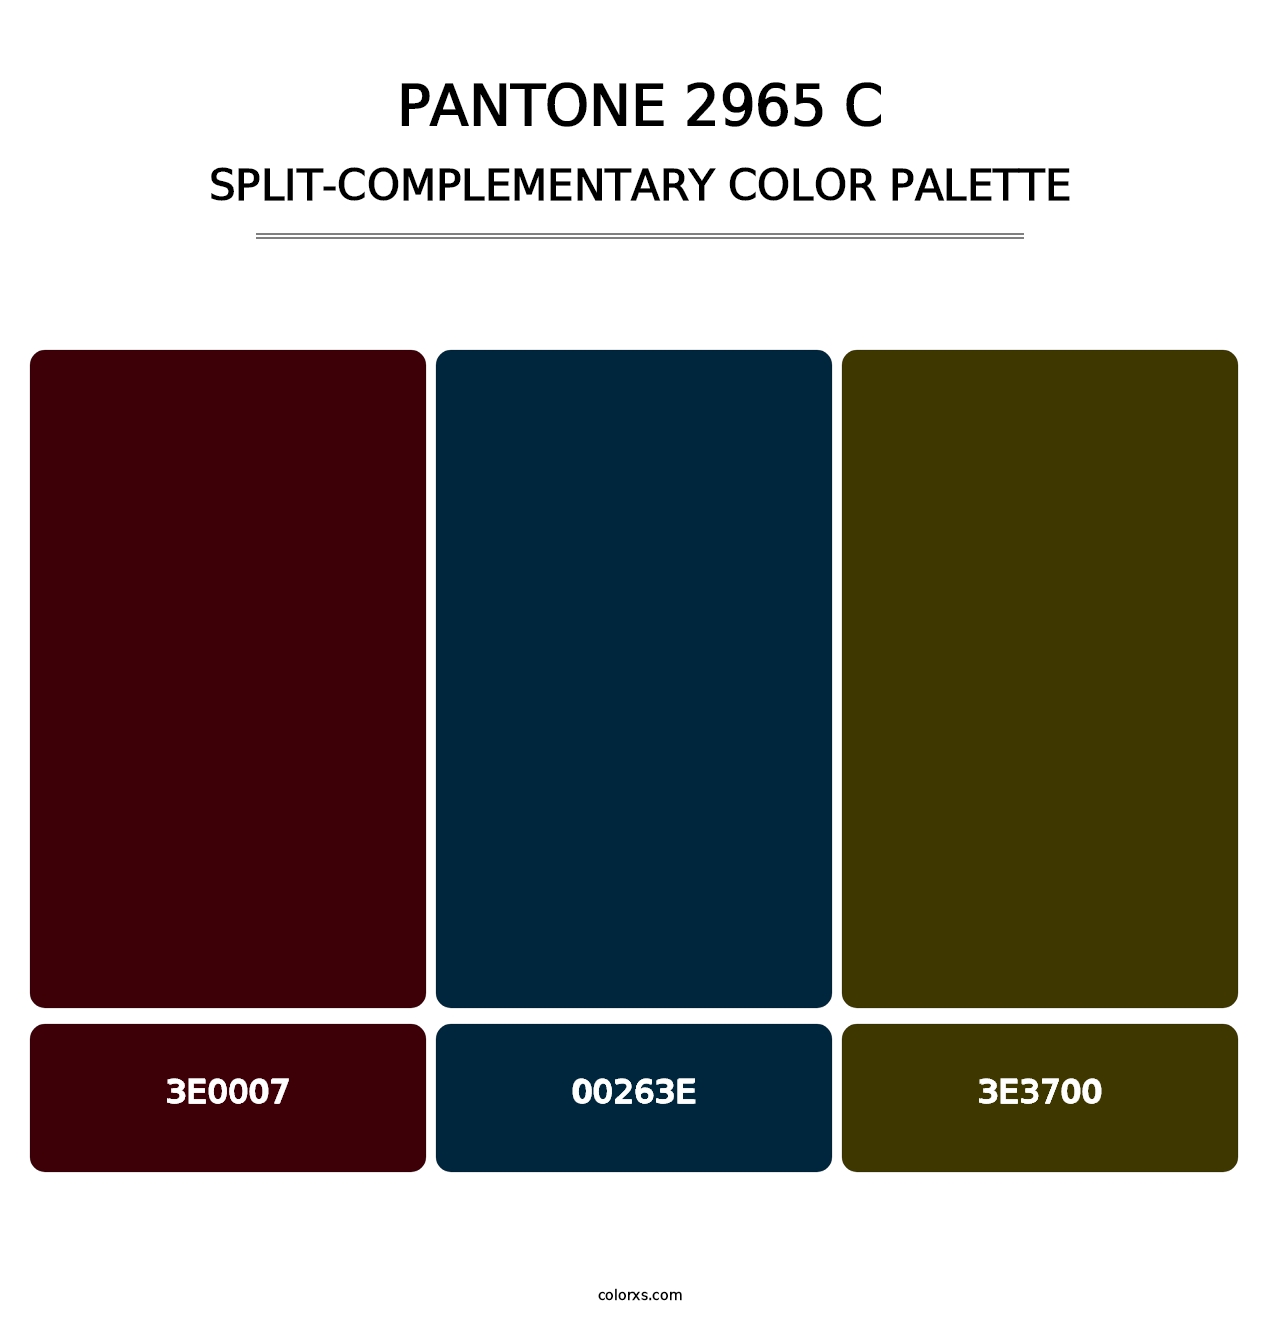 PANTONE 2965 C - Split-Complementary Color Palette